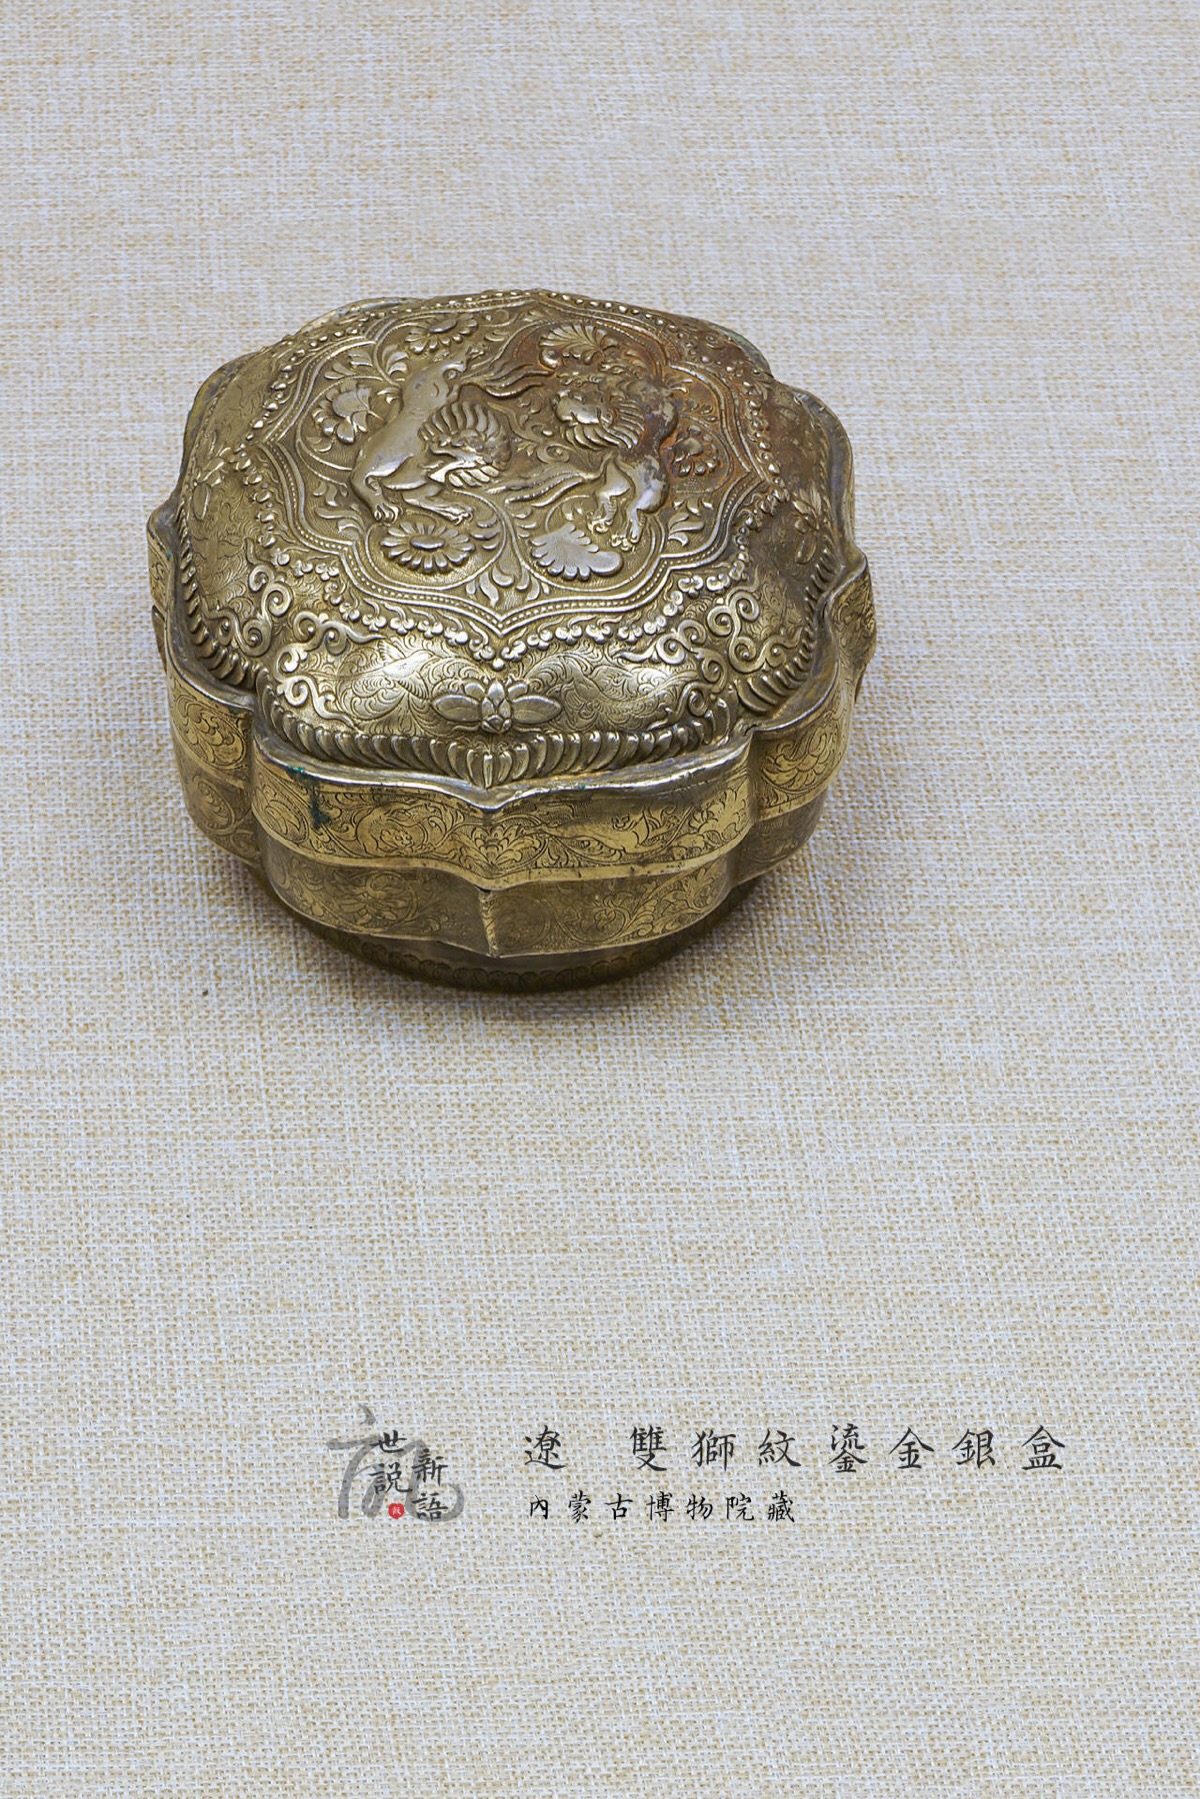 耶律羽之墓出土 辽 双狮纹鎏金银盒 内蒙古博物院